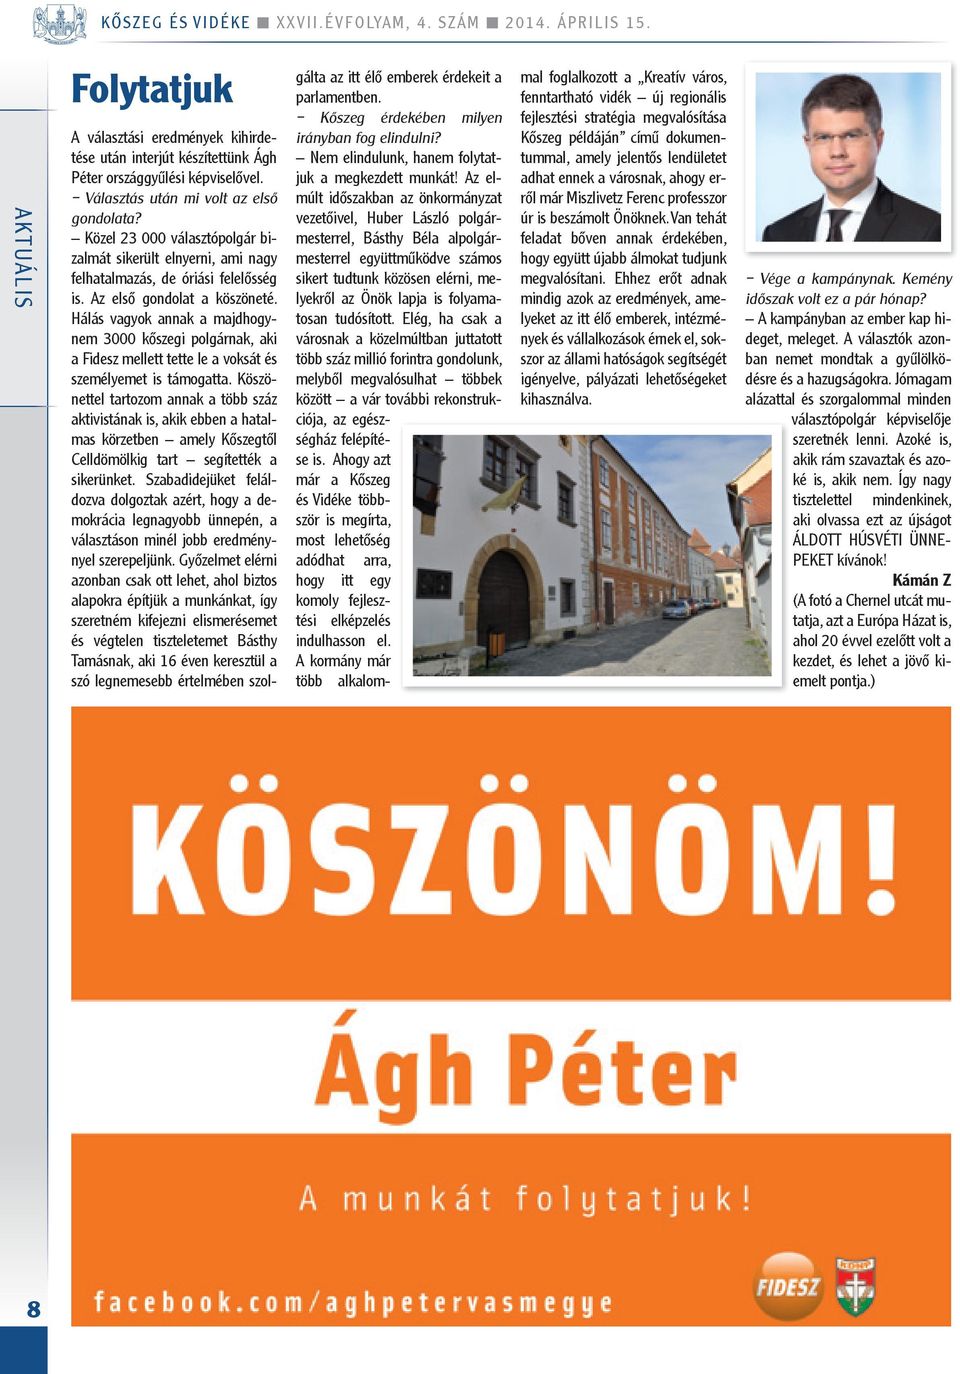 Hálás vagyok annak a majdhogynem 3000 kőszegi polgárnak, aki a Fidesz mellett tette le a voksát és személyemet is támogatta.